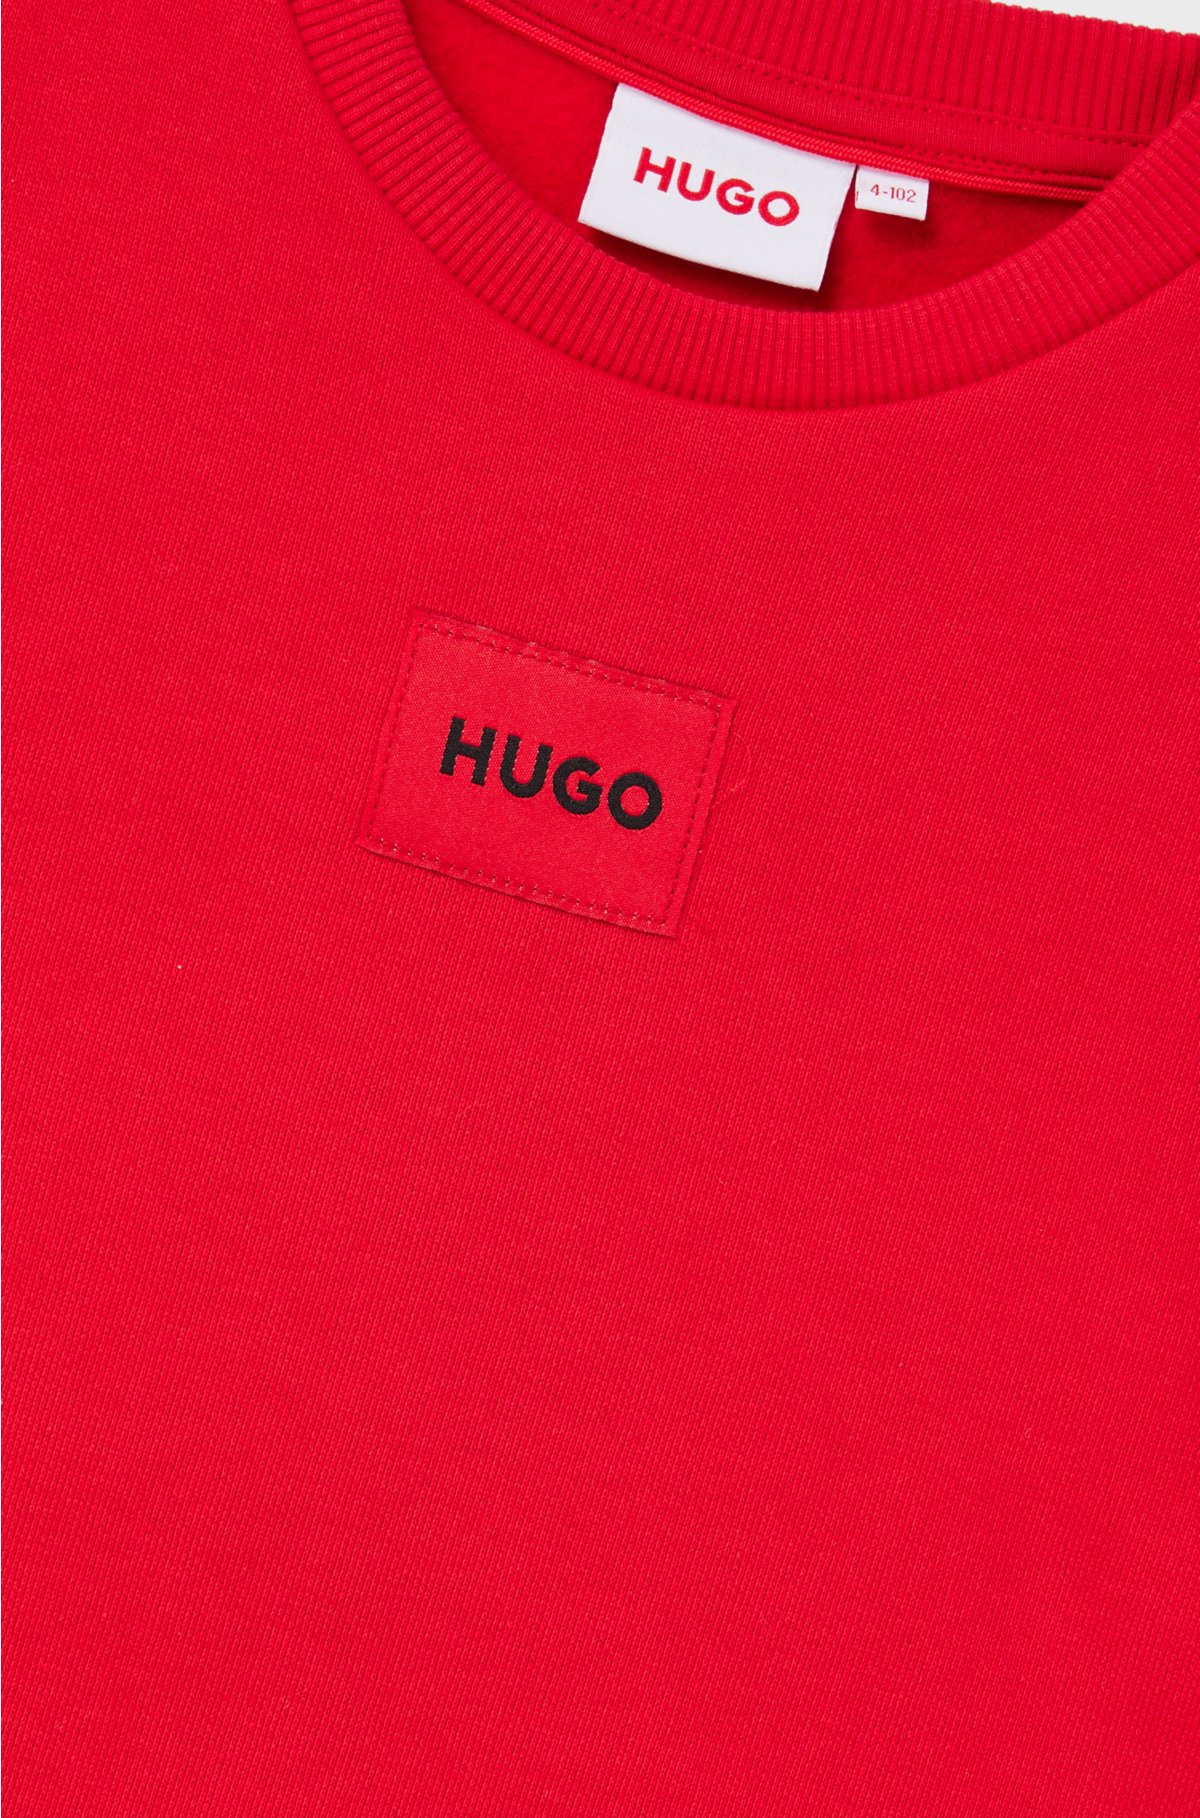 Kids' fleece sweatshirt with red logo label, Red